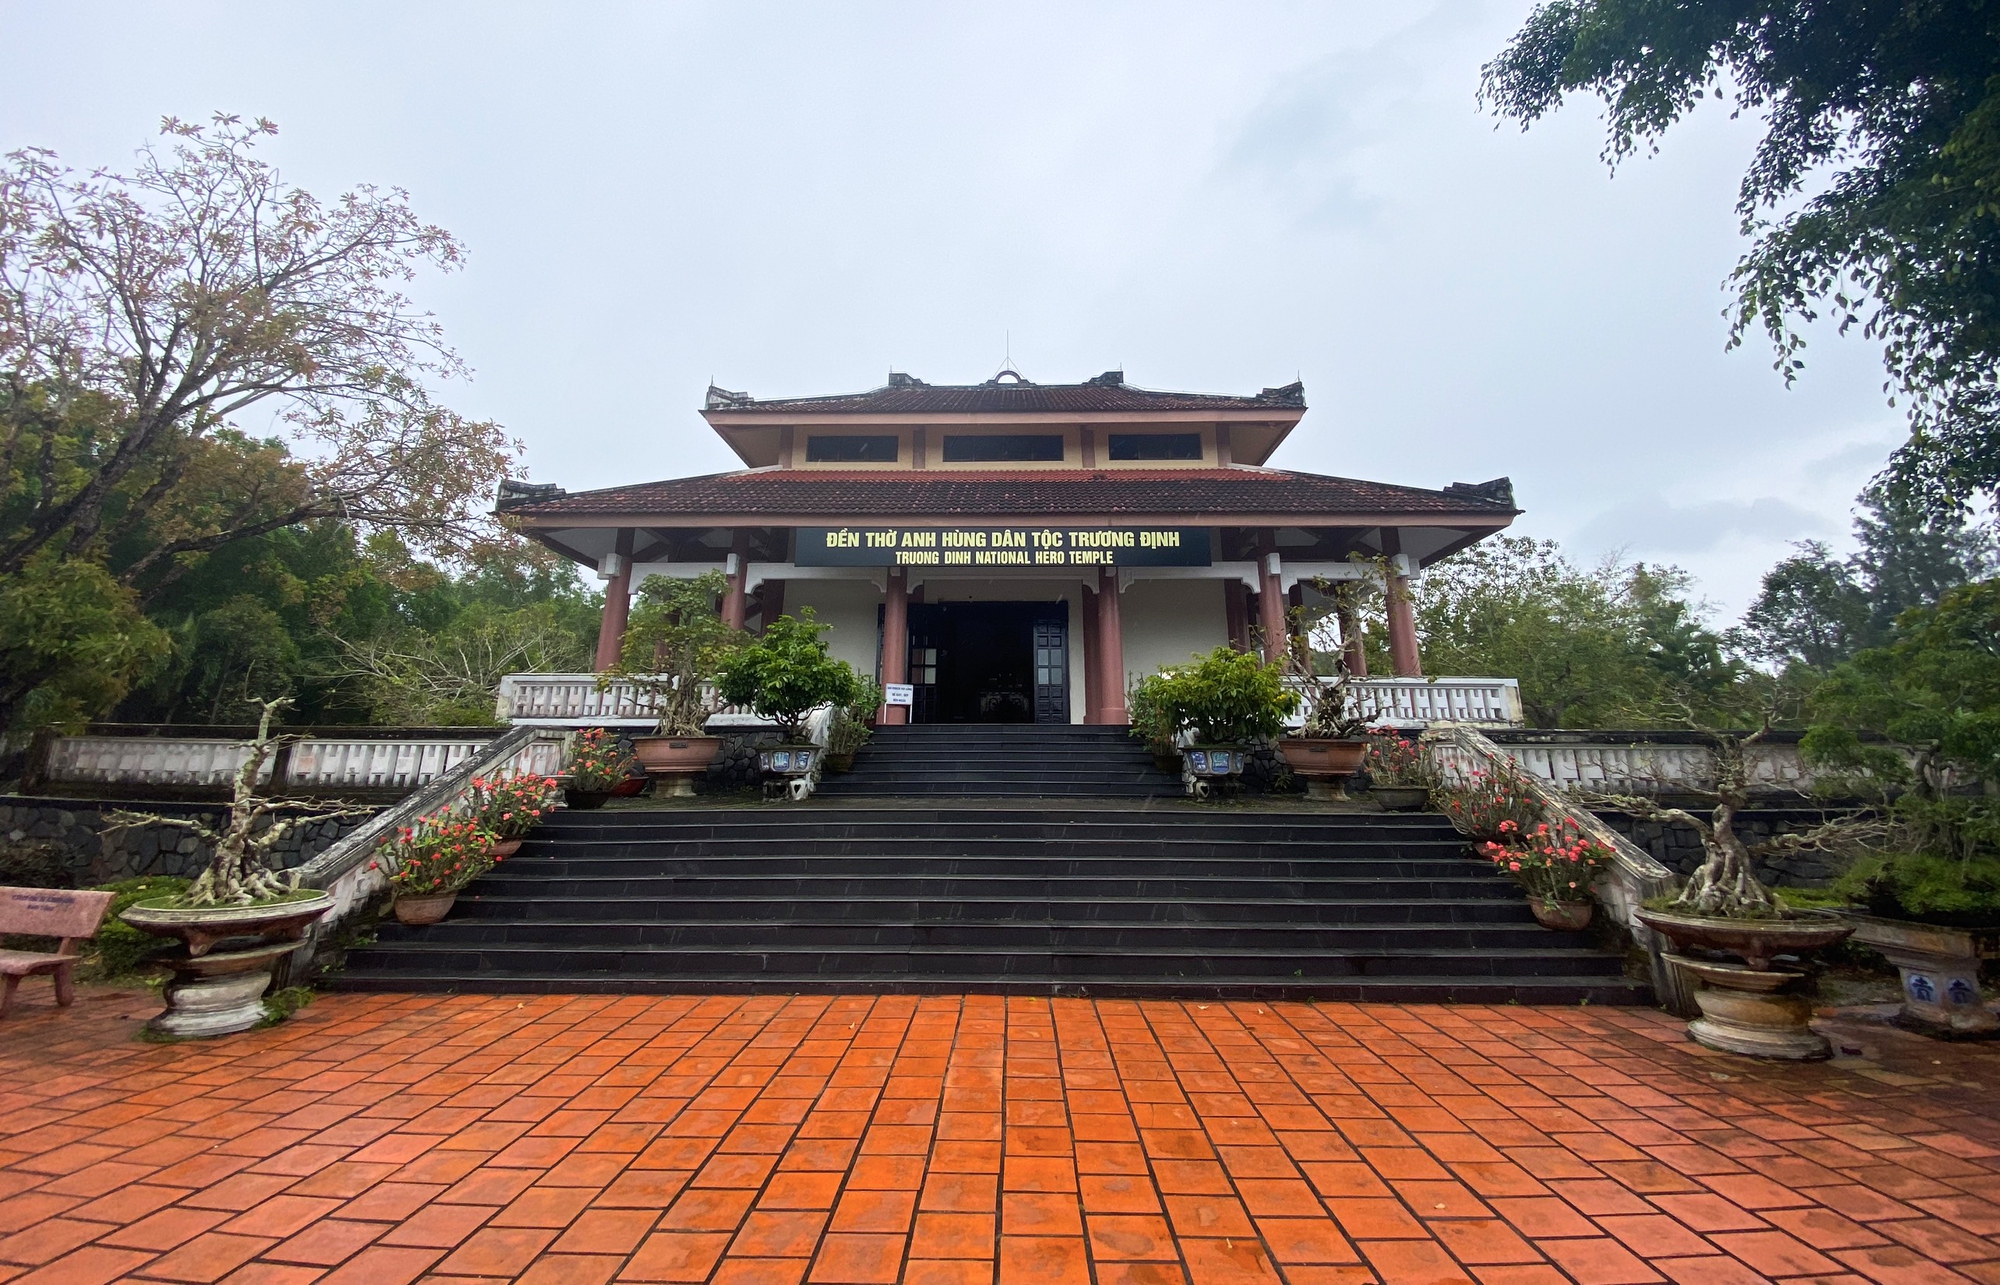 Quảng Ngãi: Đền thờ Trương Định được xếp hạng Di tích quốc gia - Ảnh 1.